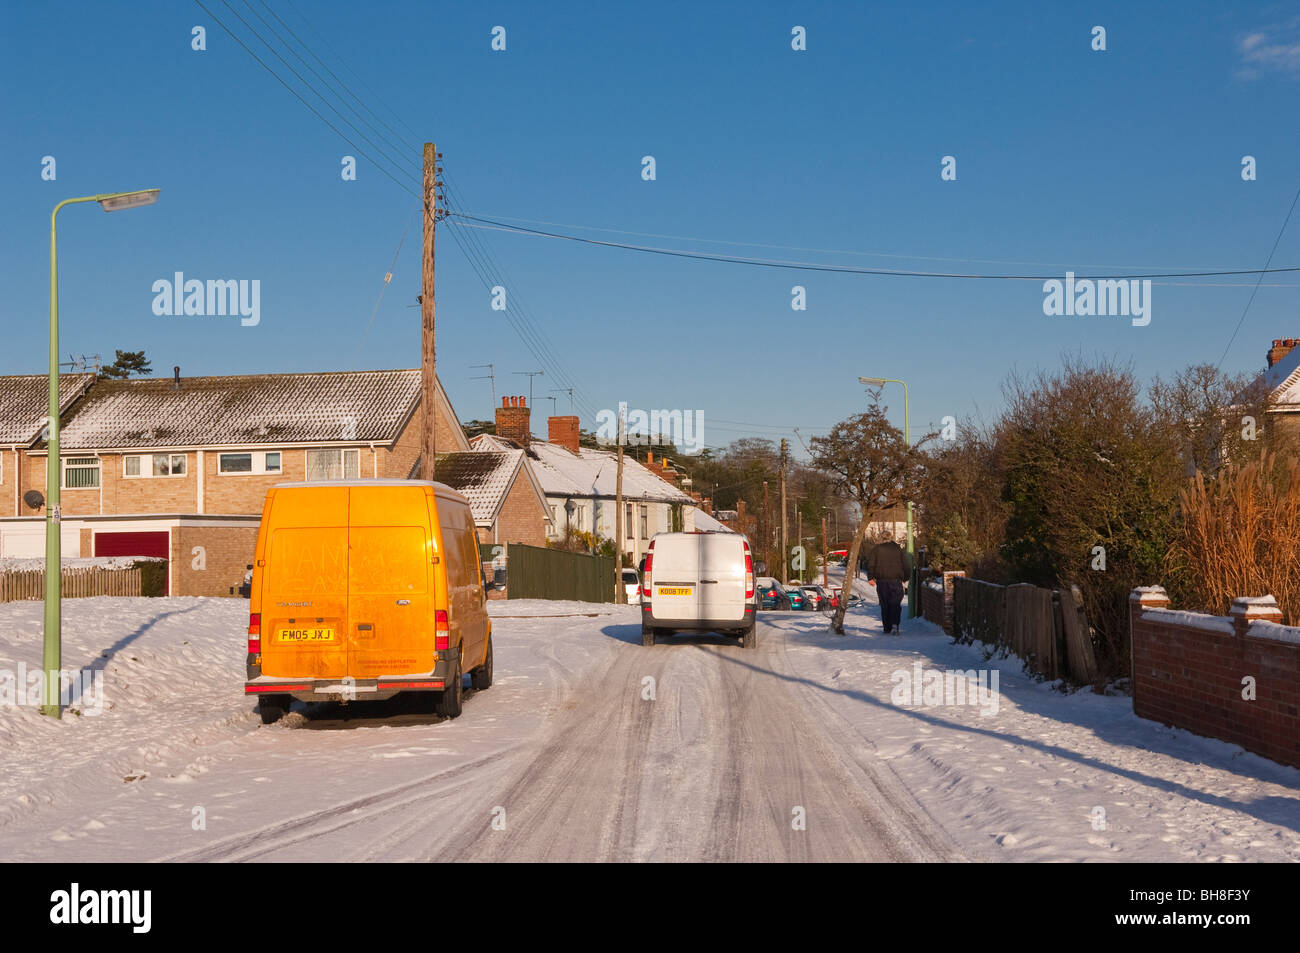 Ein Bild zeigt den Schnee auf einer ungritted Straße in einem bebauten Gebiet in Beccles, Suffolk, England, Großbritannien, Uk Stockfoto